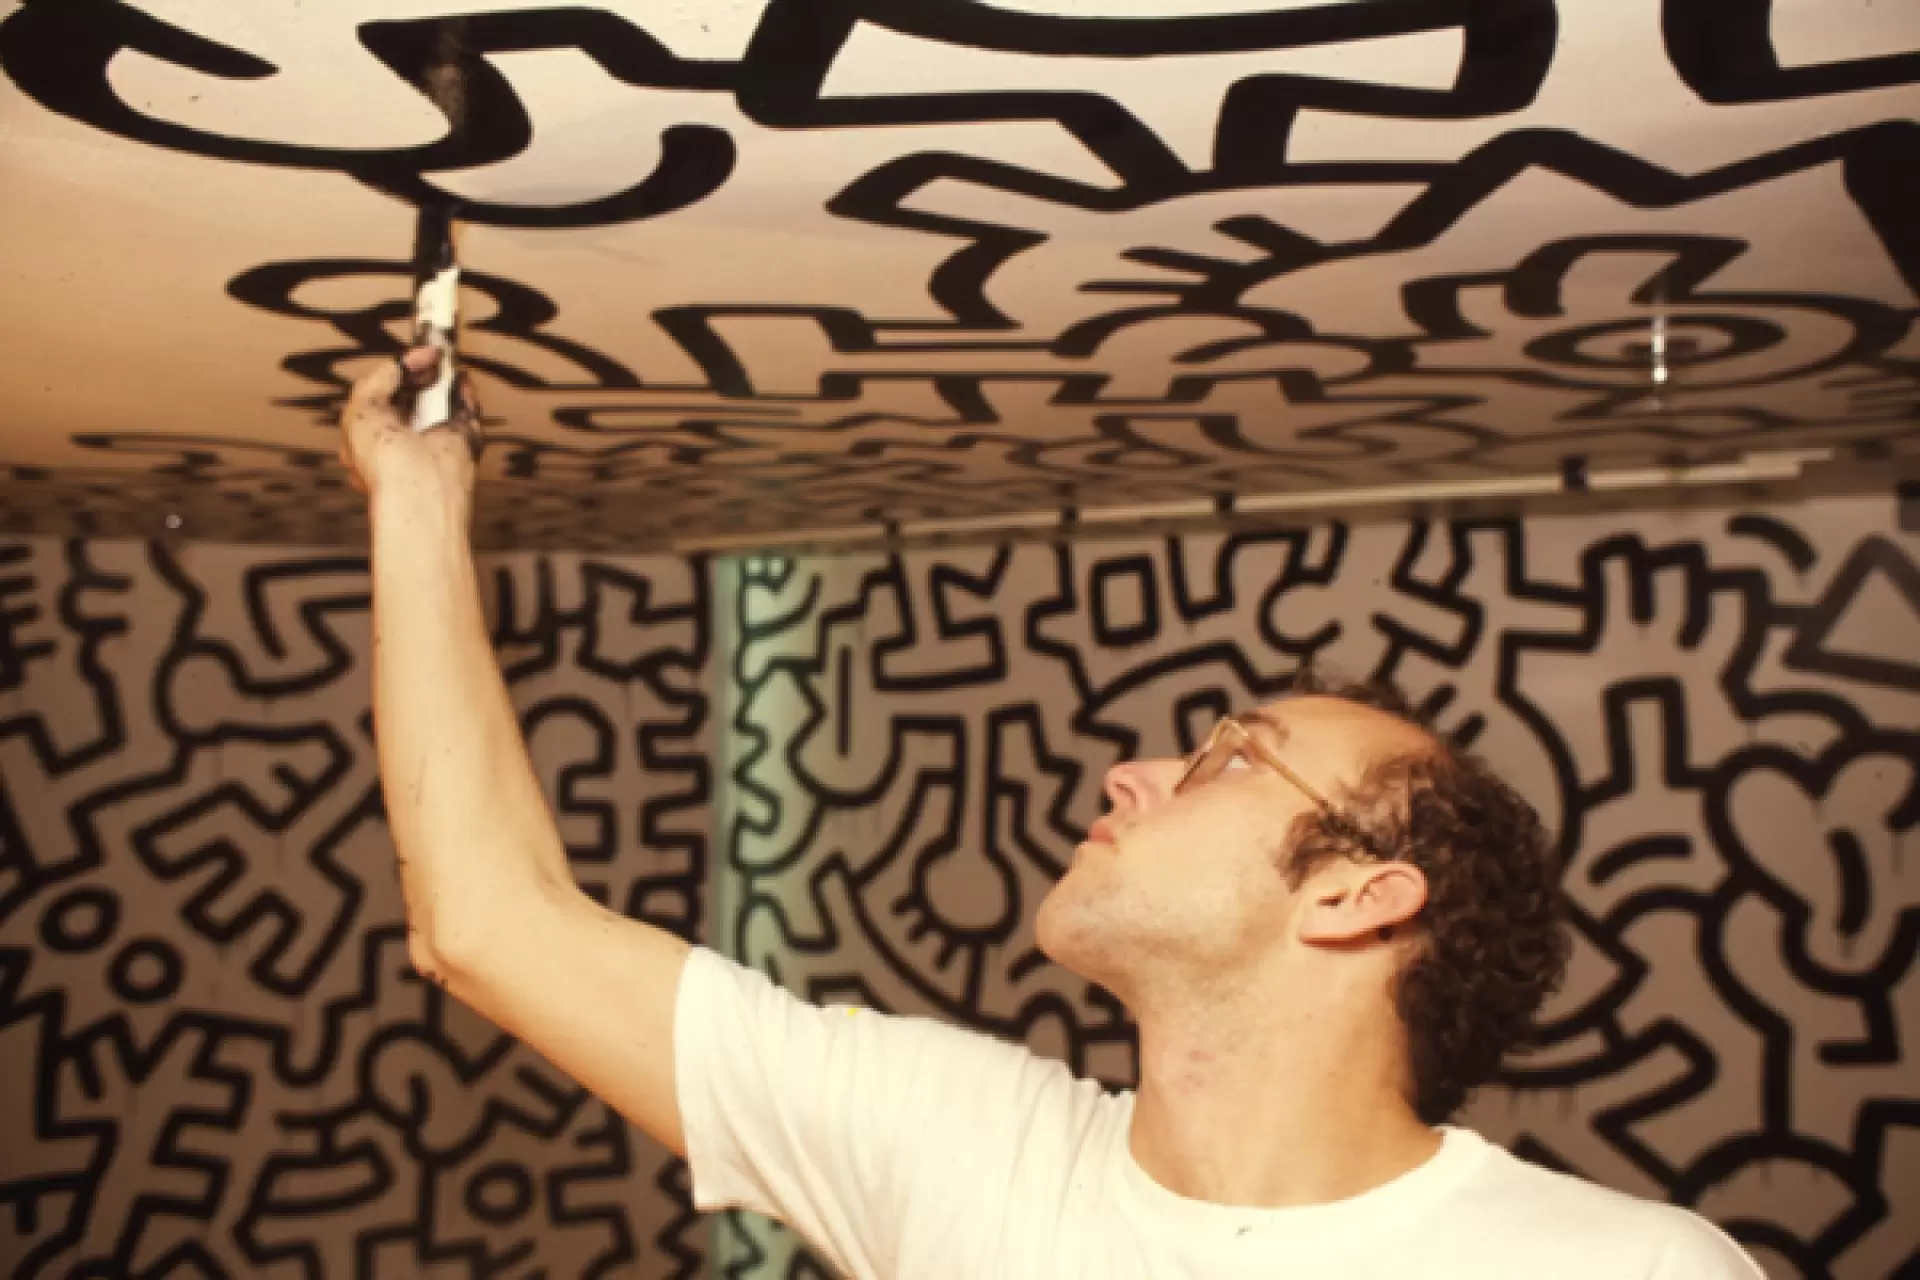 دانلود مستند The Universe of Keith Haring 2008 (جهان کیت هرینگ)